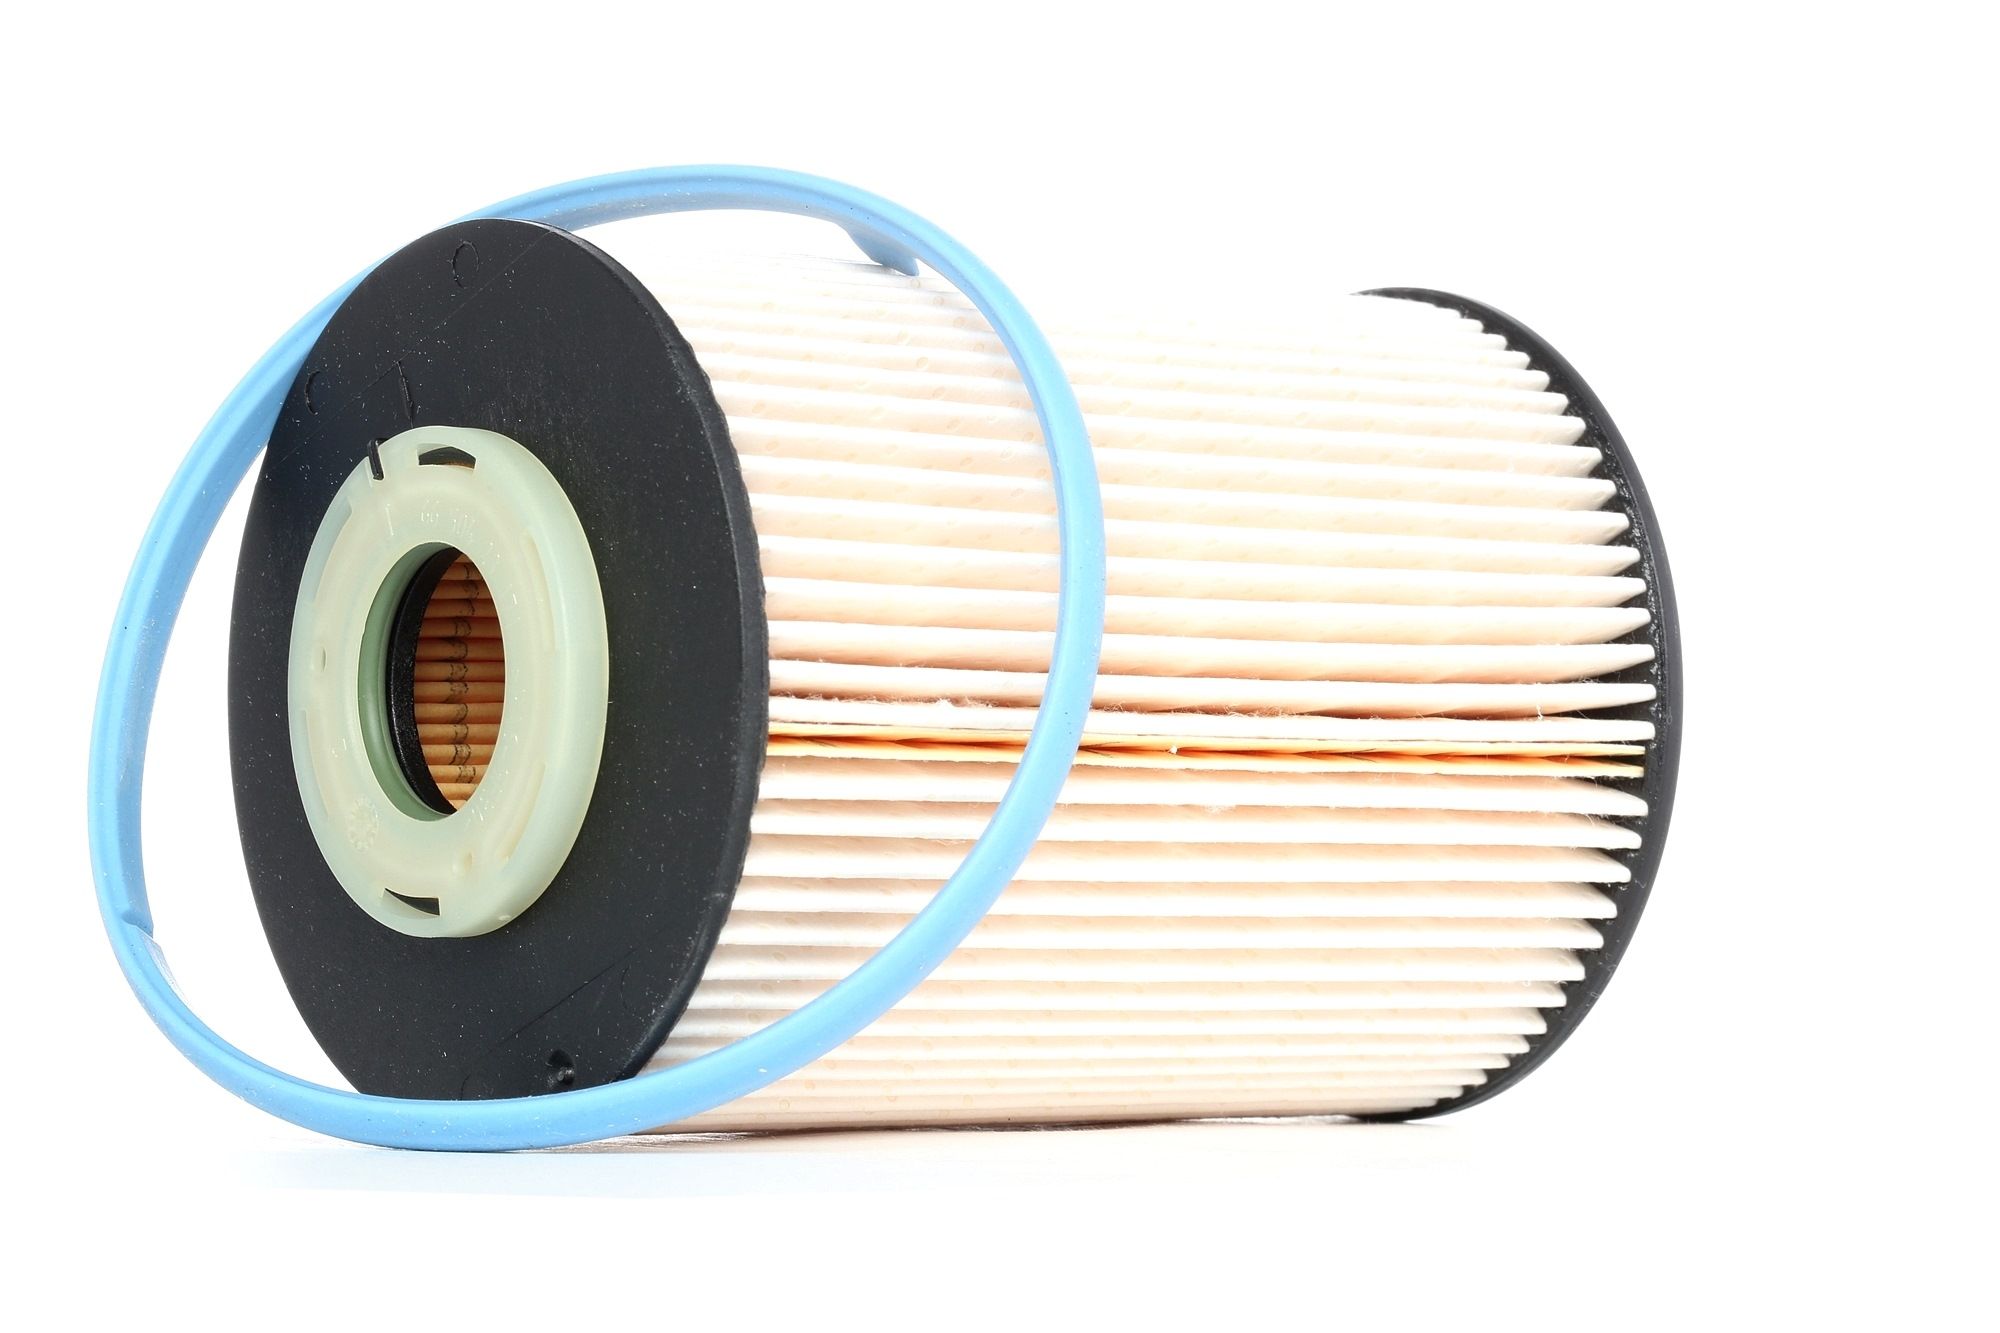 Palivový filtr PU 9003 z s vynikajícím poměrem mezi cenou a MANN-FILTER kvalitou